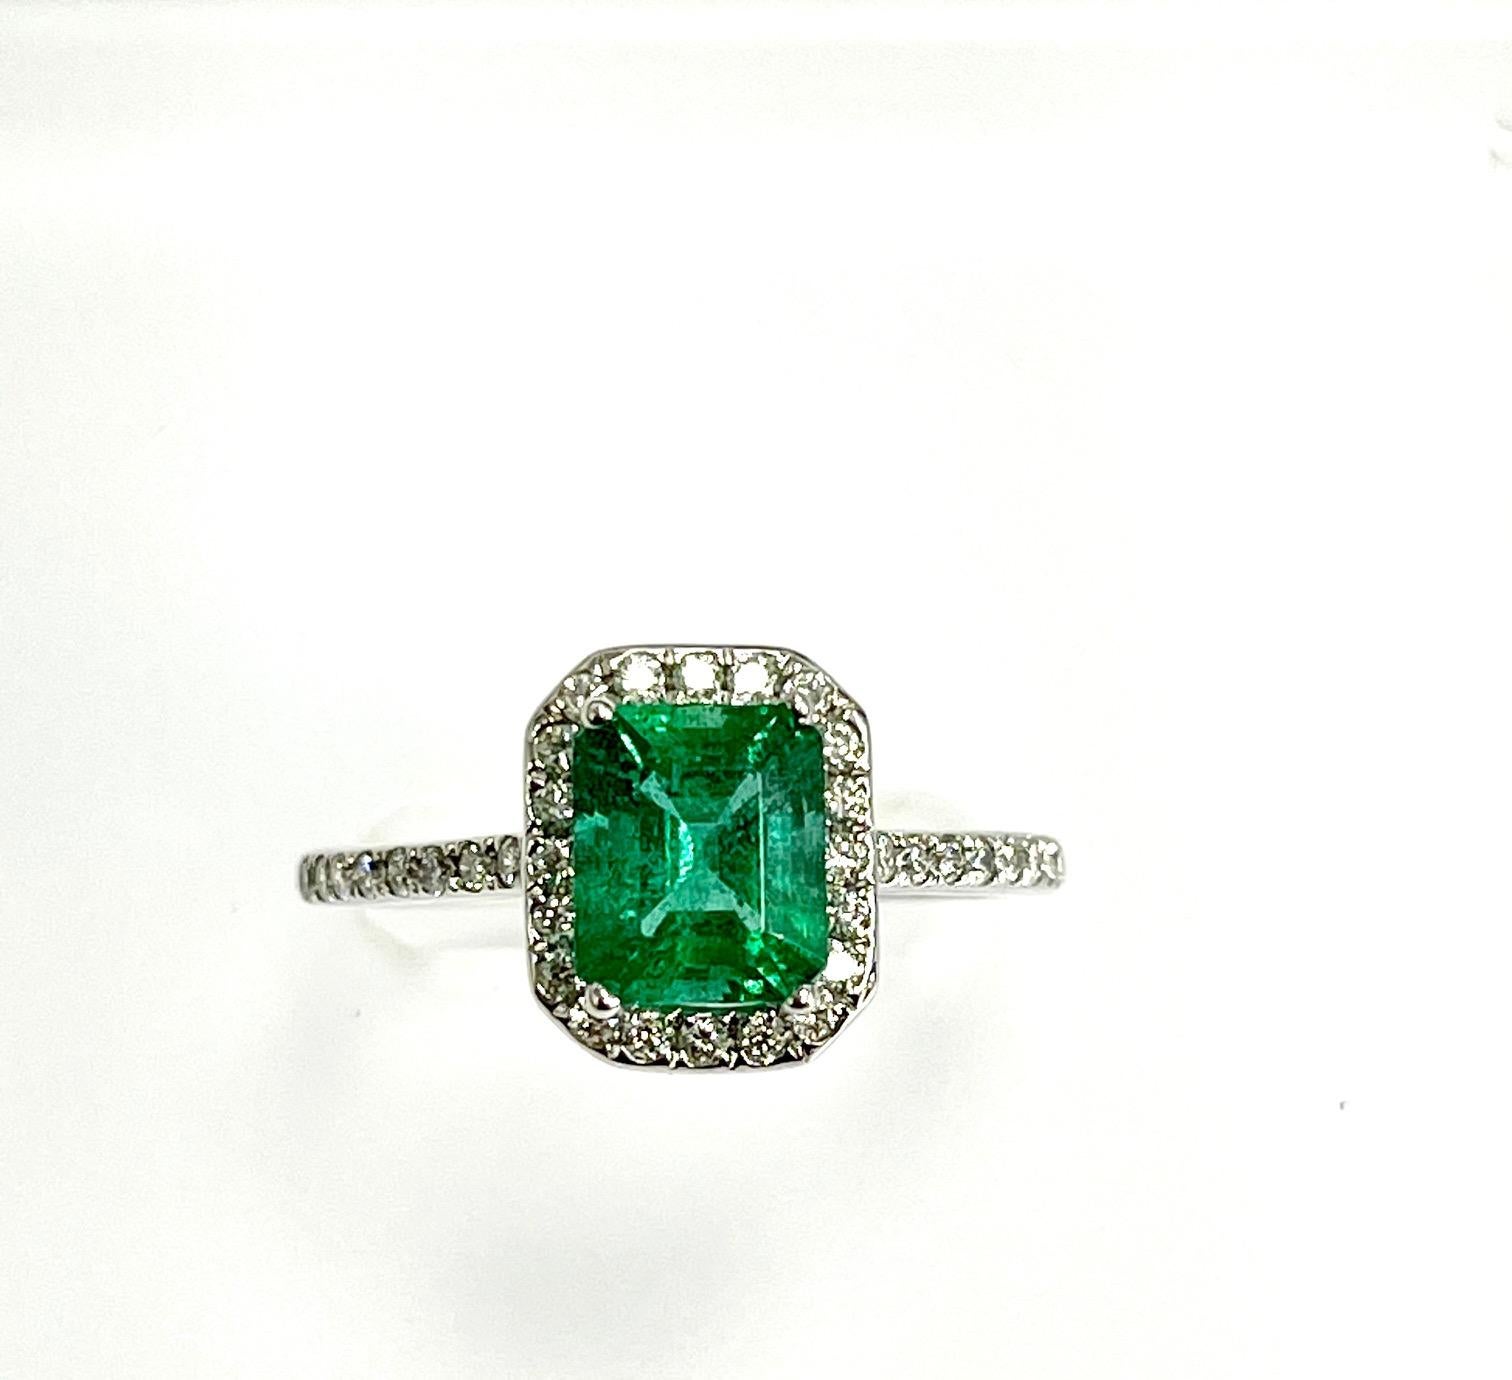 1.16 Karat Smaragdschliff sambischen Smaragd in 18k Weißgold Ring mit 0,32 Karat Diamanten um ihn herum gesetzt 